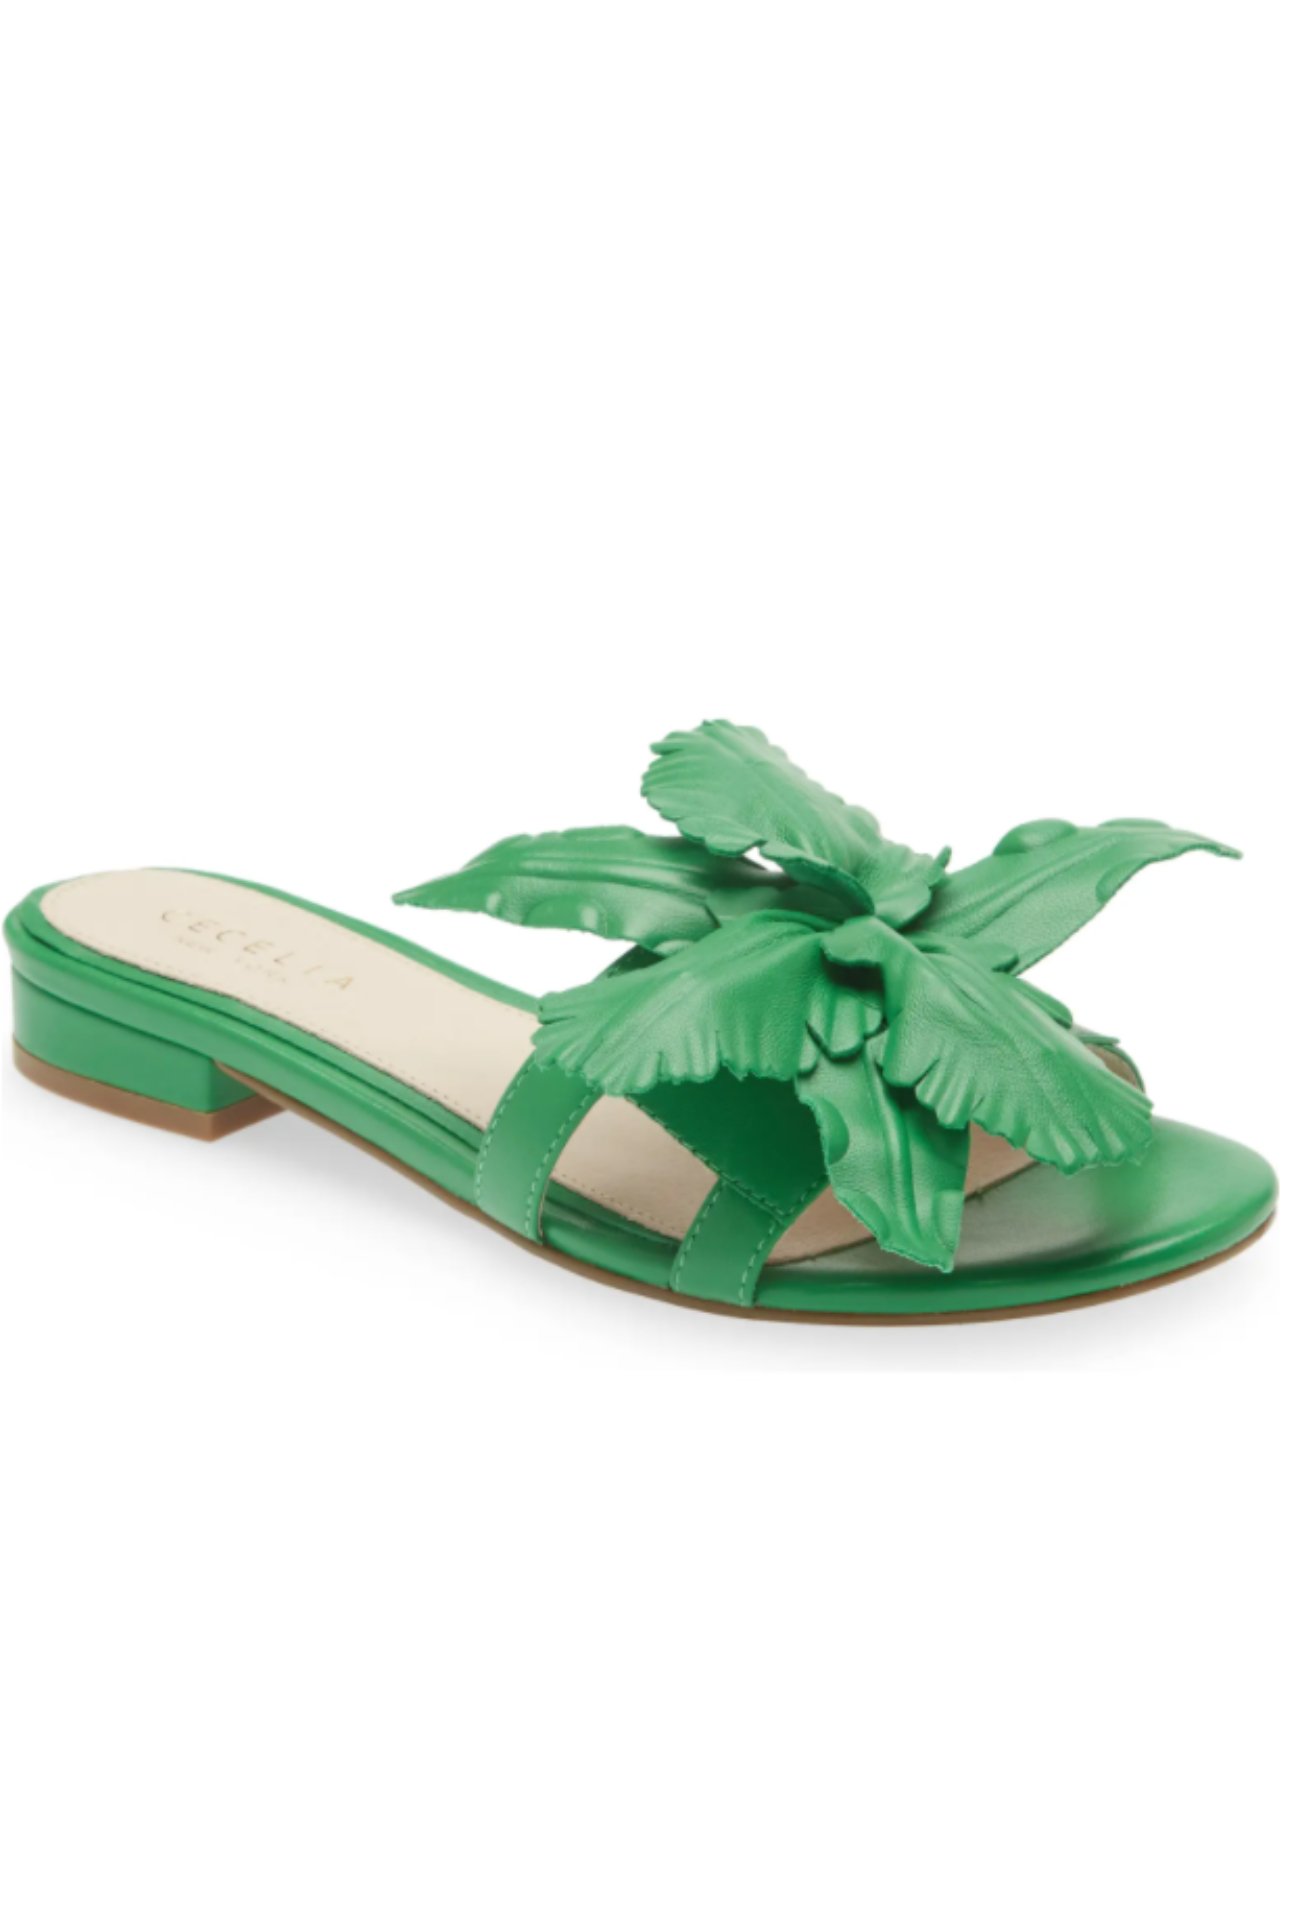 green sandals